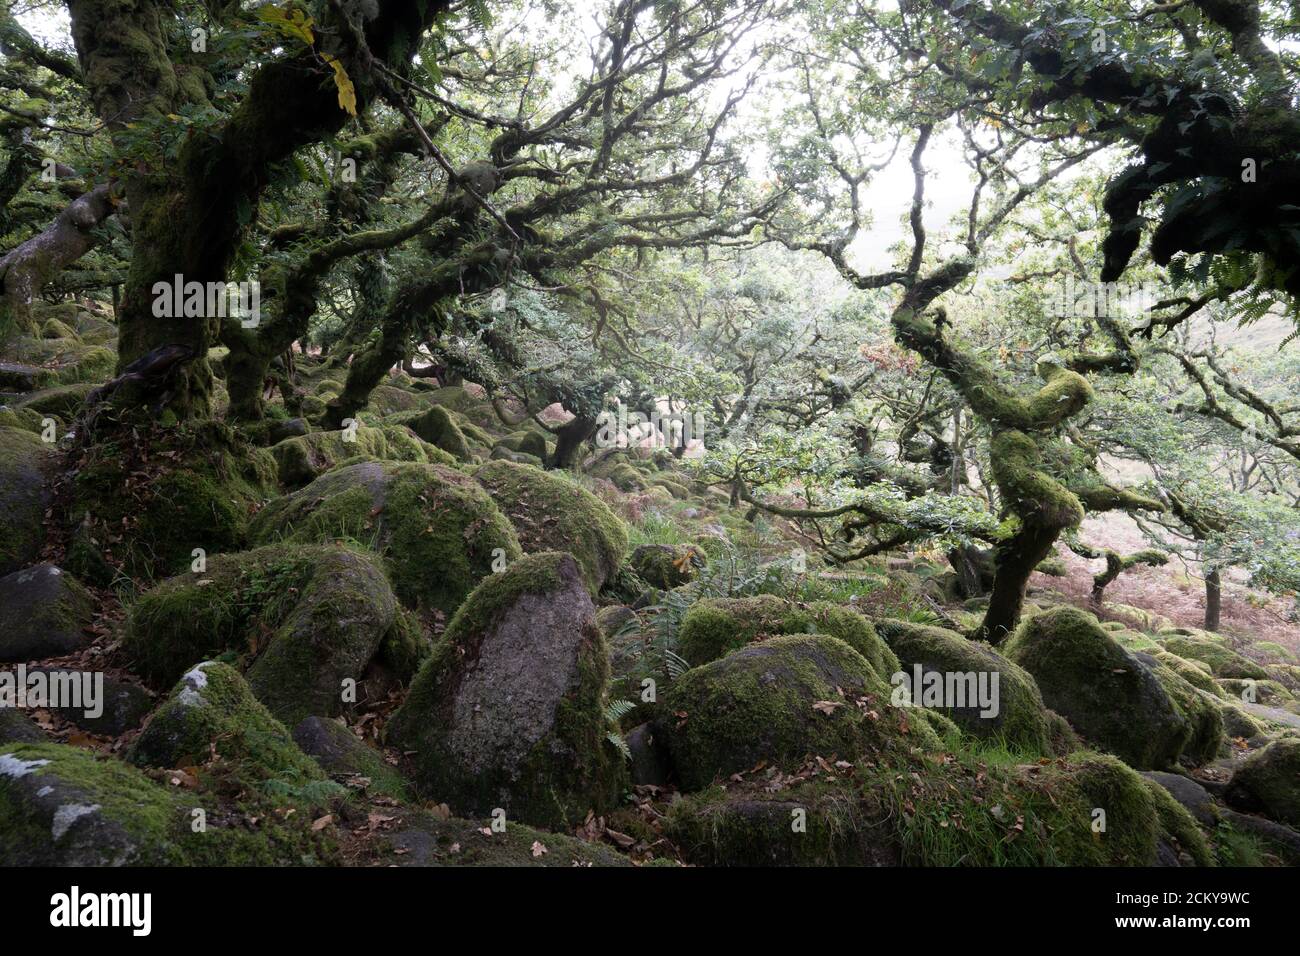 Wistman's Wood, Dartmoor, Devon, Reino Unido. Uno de los bosques de oakwoods más altos de Gran Bretaña, un ejemplo de bosque de robles nativos. Foto de stock